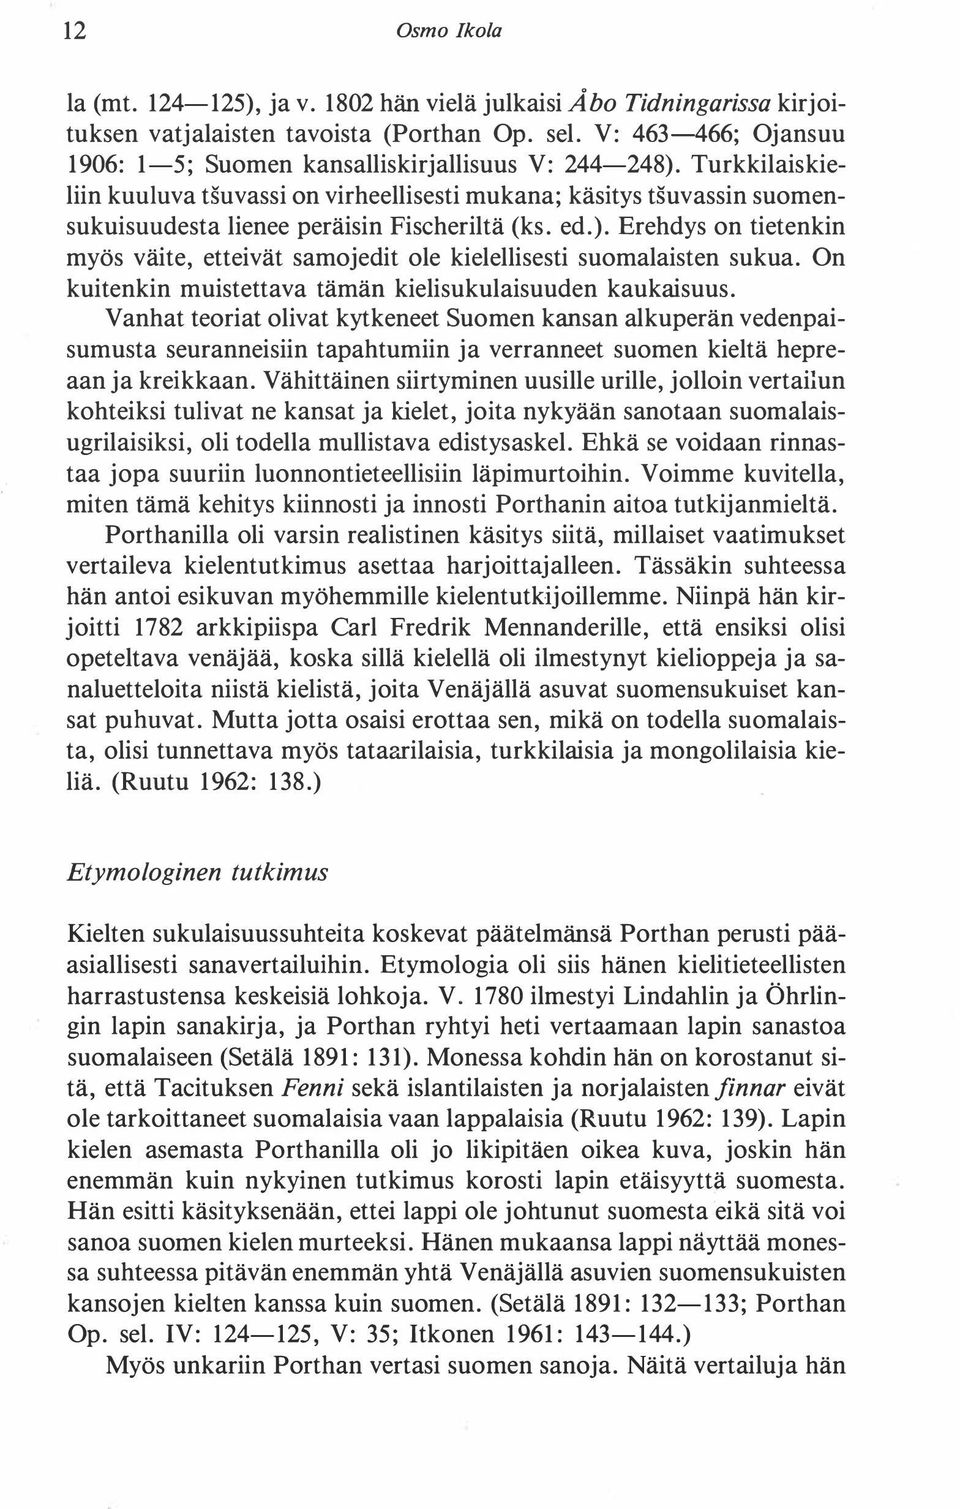 Turkkilaiskieliin kuuluva tsuvassi on virheellisesti mukana; käsitys tsuvassin suomensukuisuudesta lienee peräisin Fischeriltä (ks. ed.).